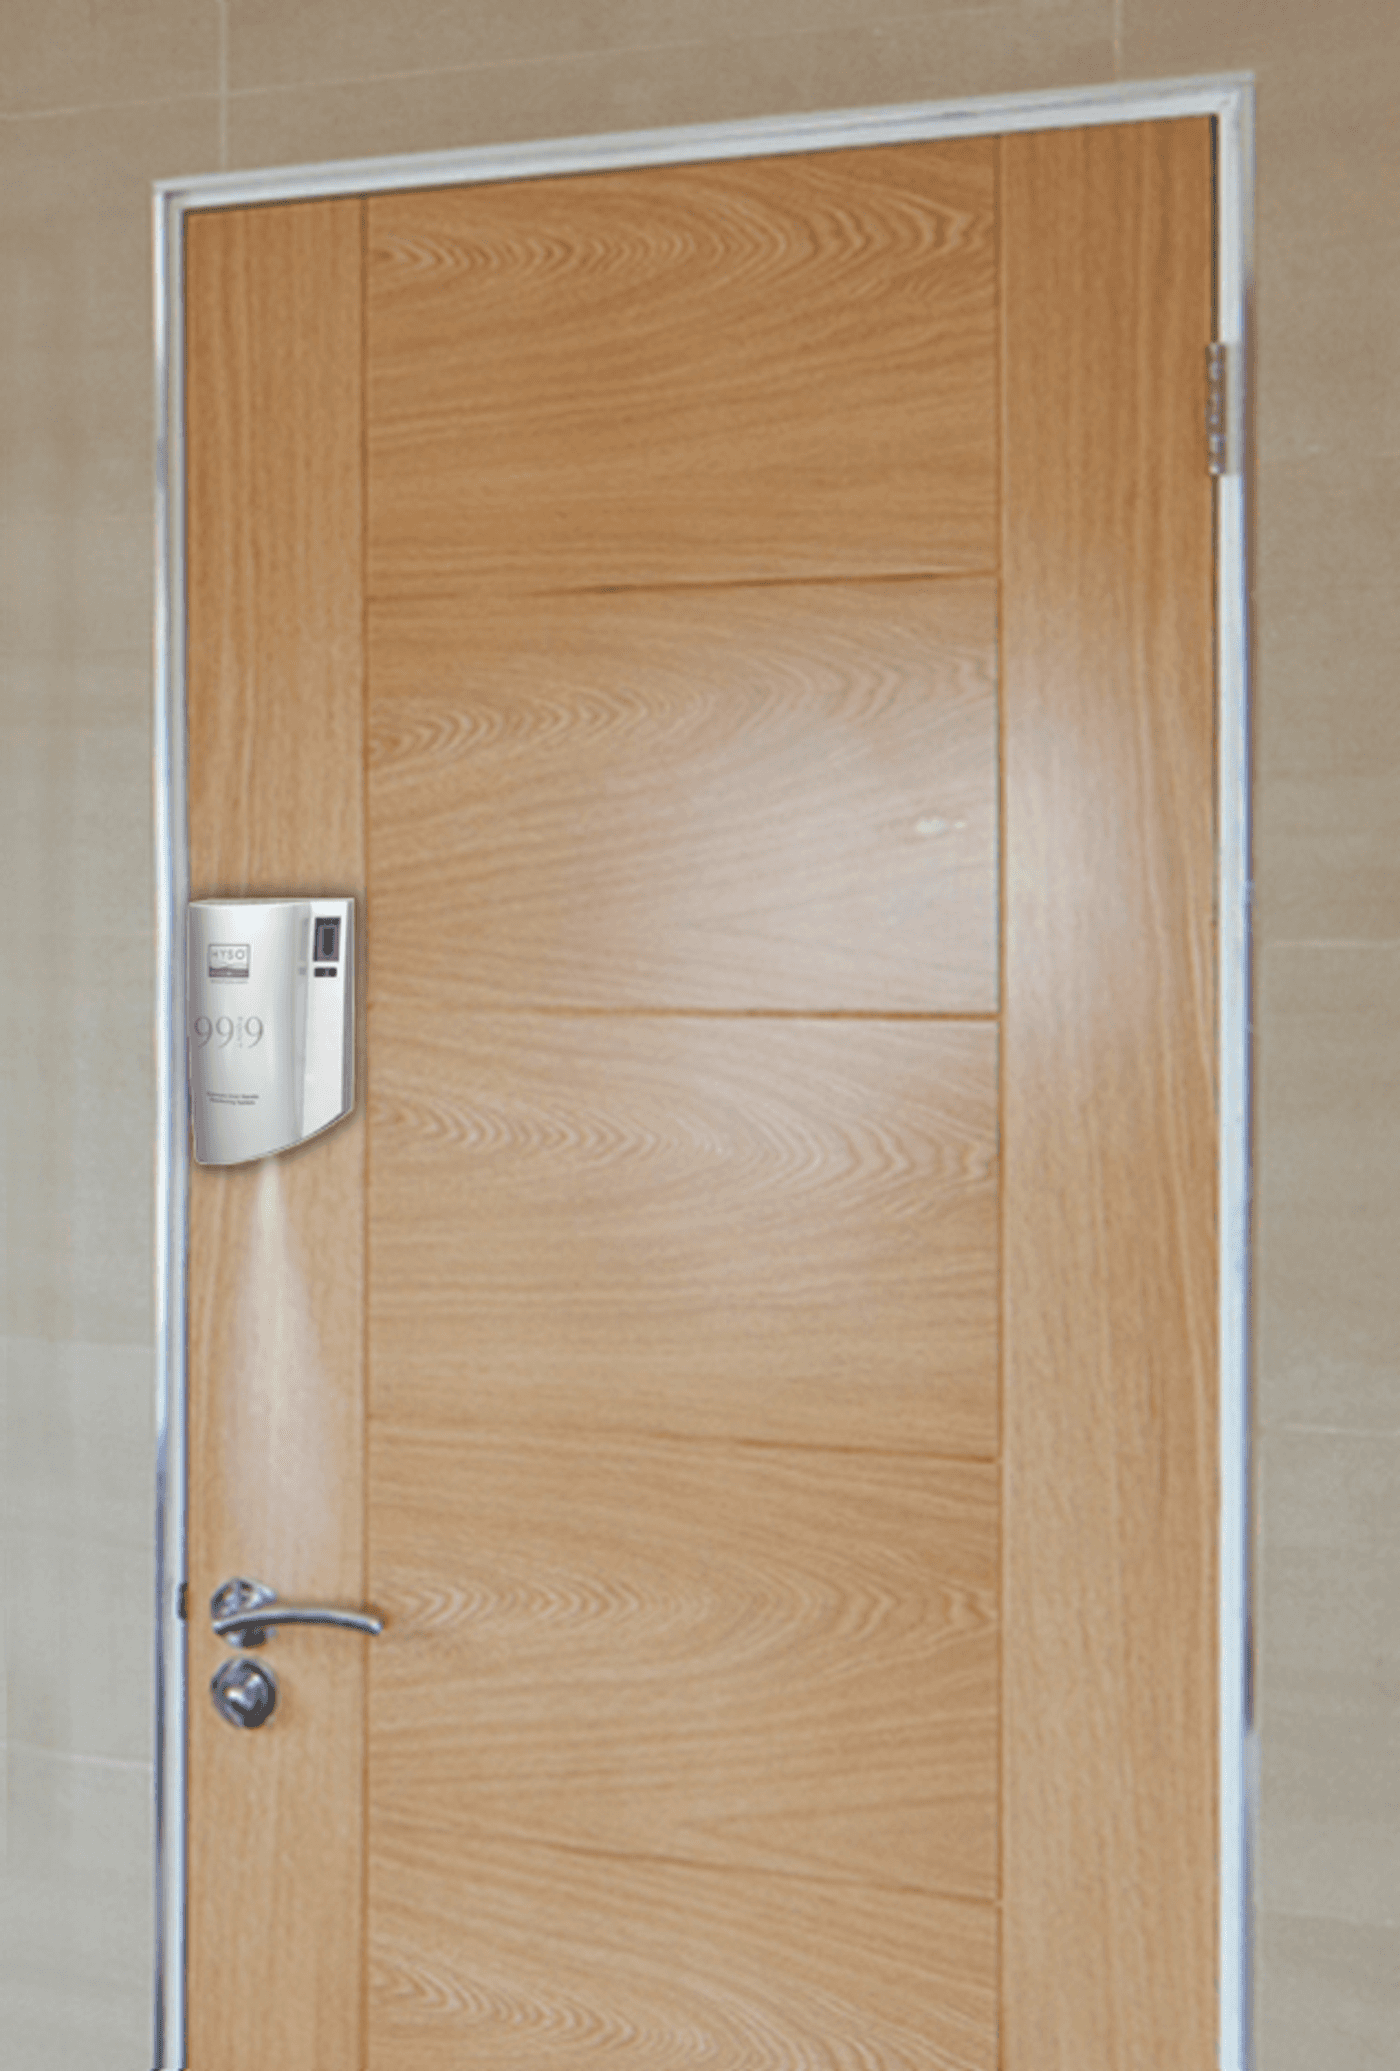 Automatic Door handle disinfector